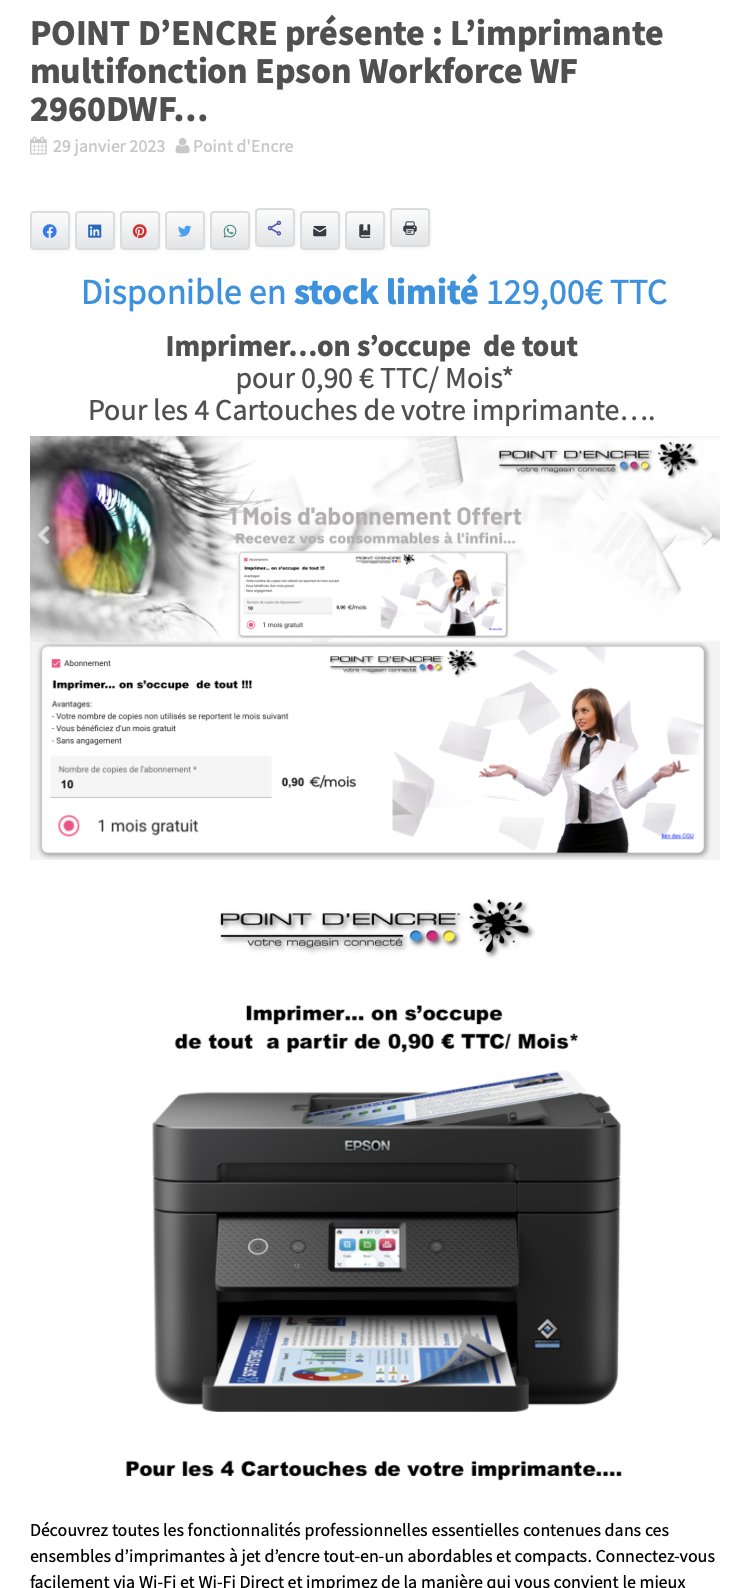 POINT D’ENCRE présente : L'imprimante multifonction Epson Workforce WF 2960DWF... 